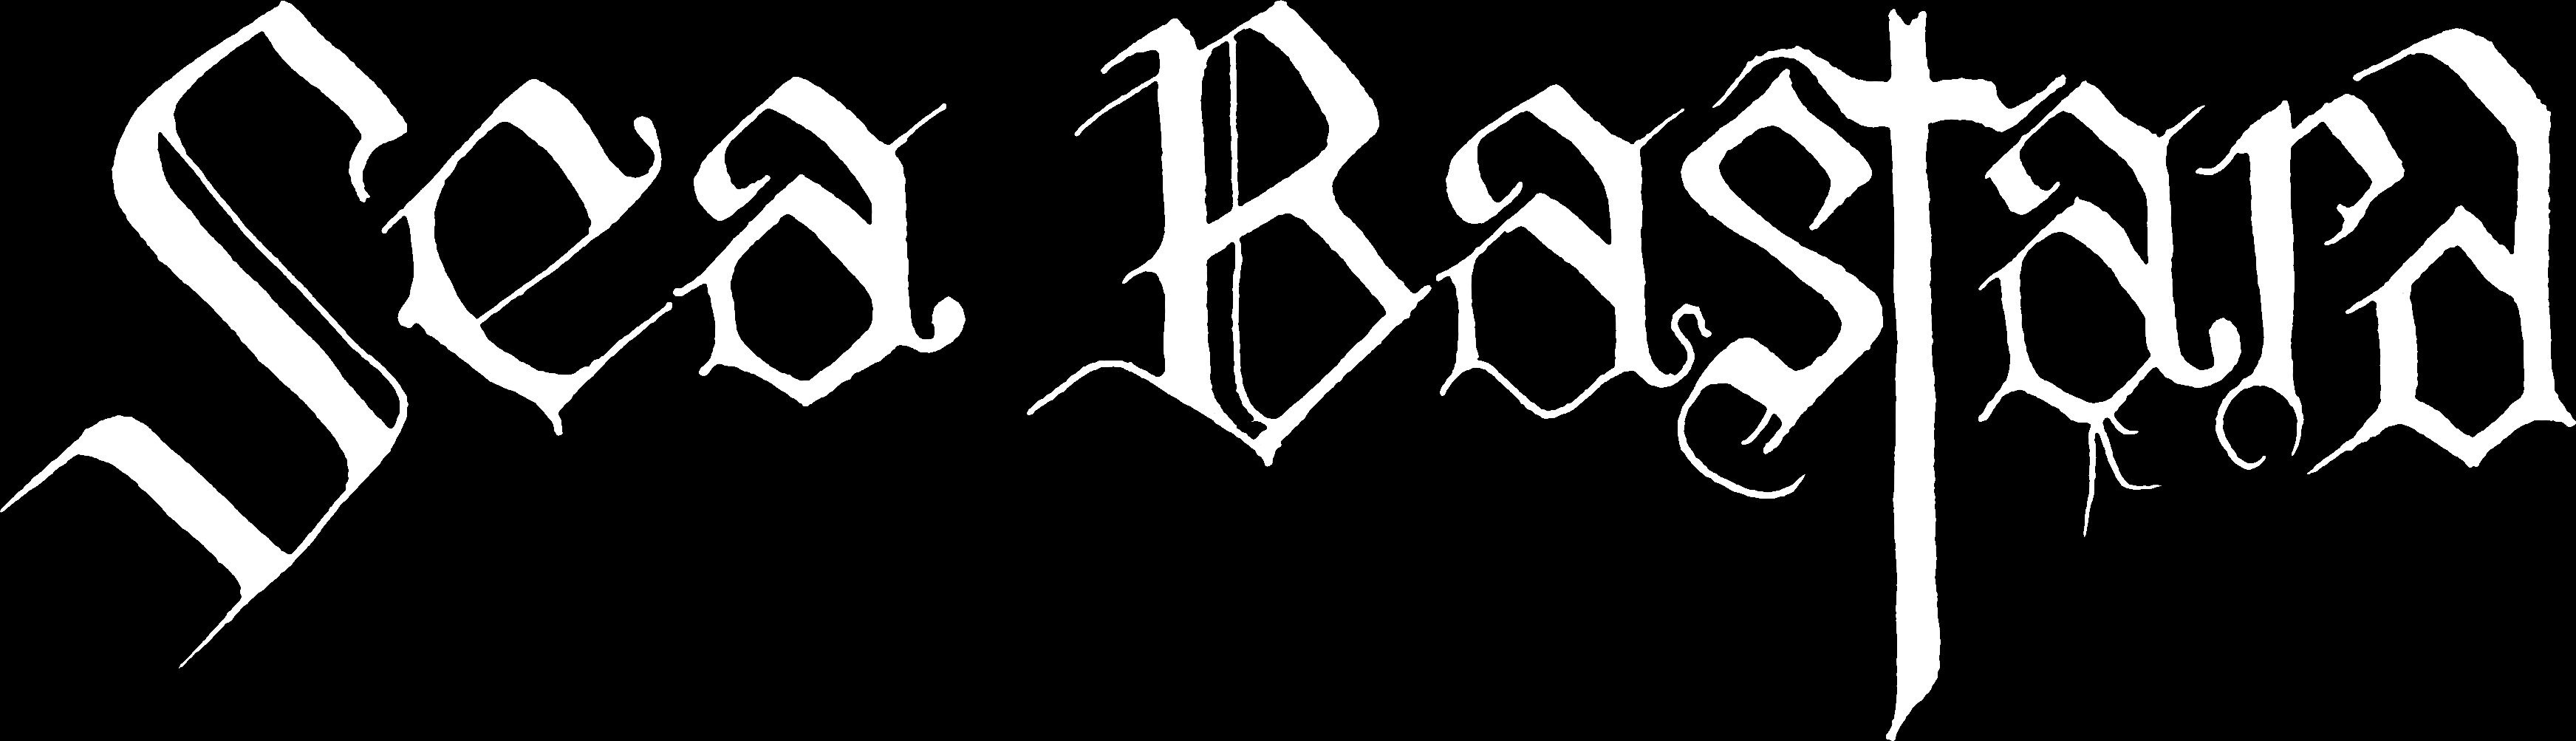 Bastard #3